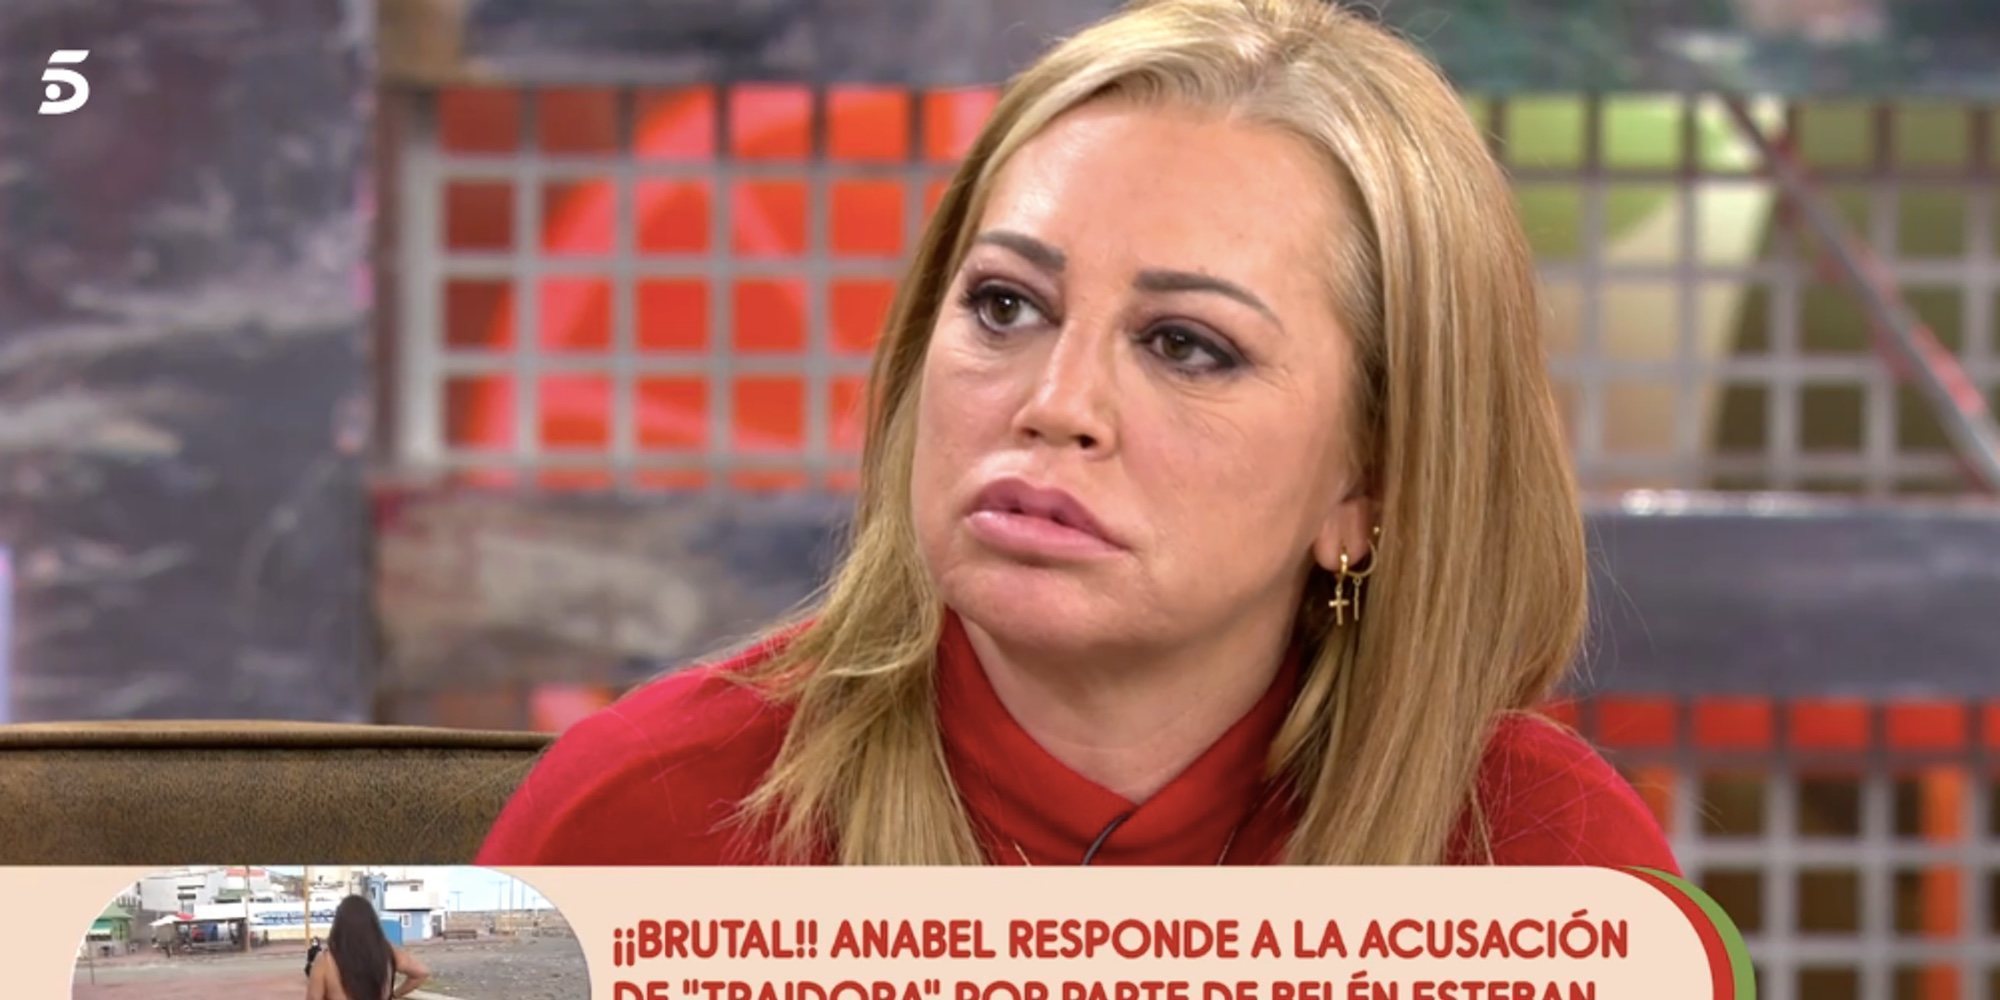 La drástica decisión de Belén Esteban tras su conflicto con Anabel Pantoja: "Me han metido en un lío gordo"